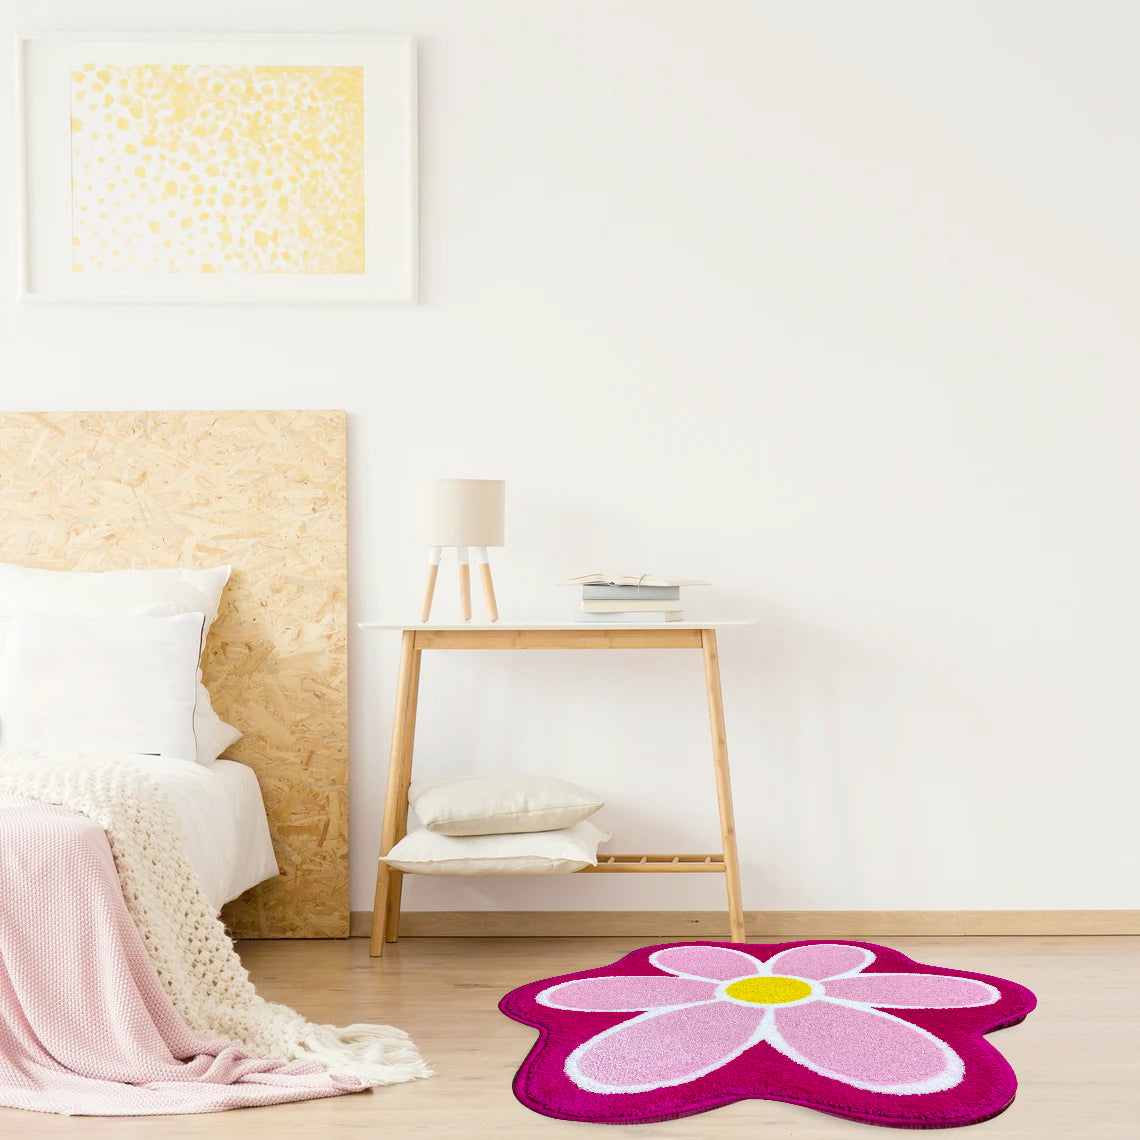 Feblilac Lovely Pink Daisy Flower Bathroom Mat Area Rug - Feblilac® Mat